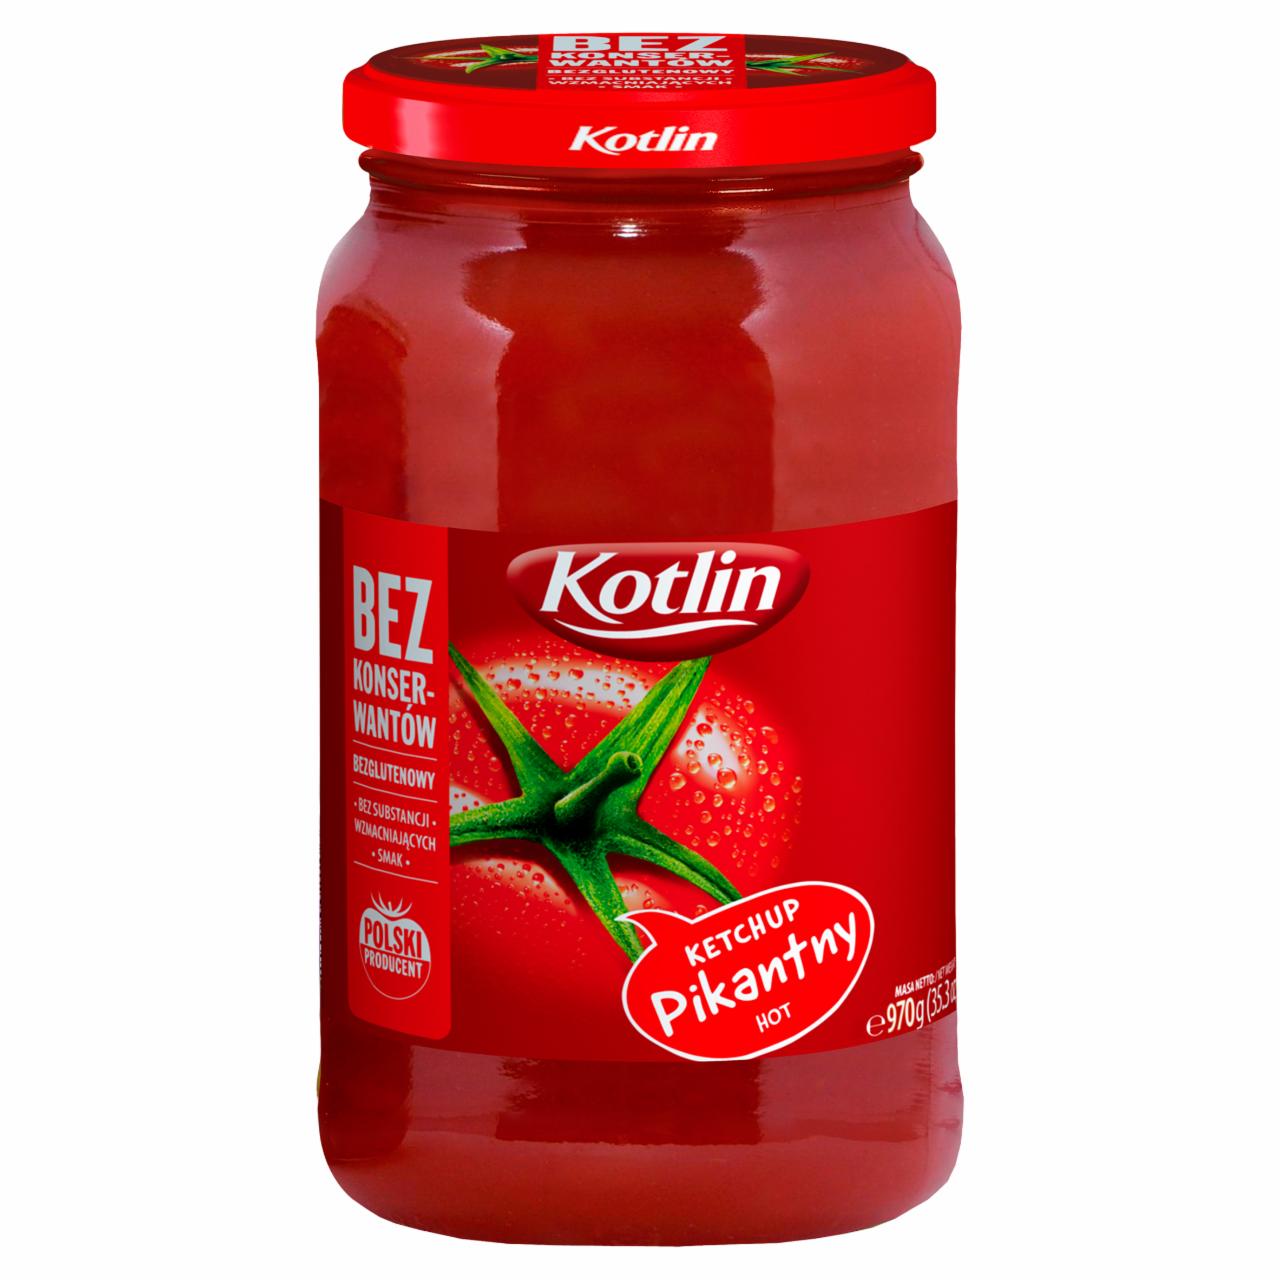 Zdjęcia - Kotlin Ketchup pikantny 970 g